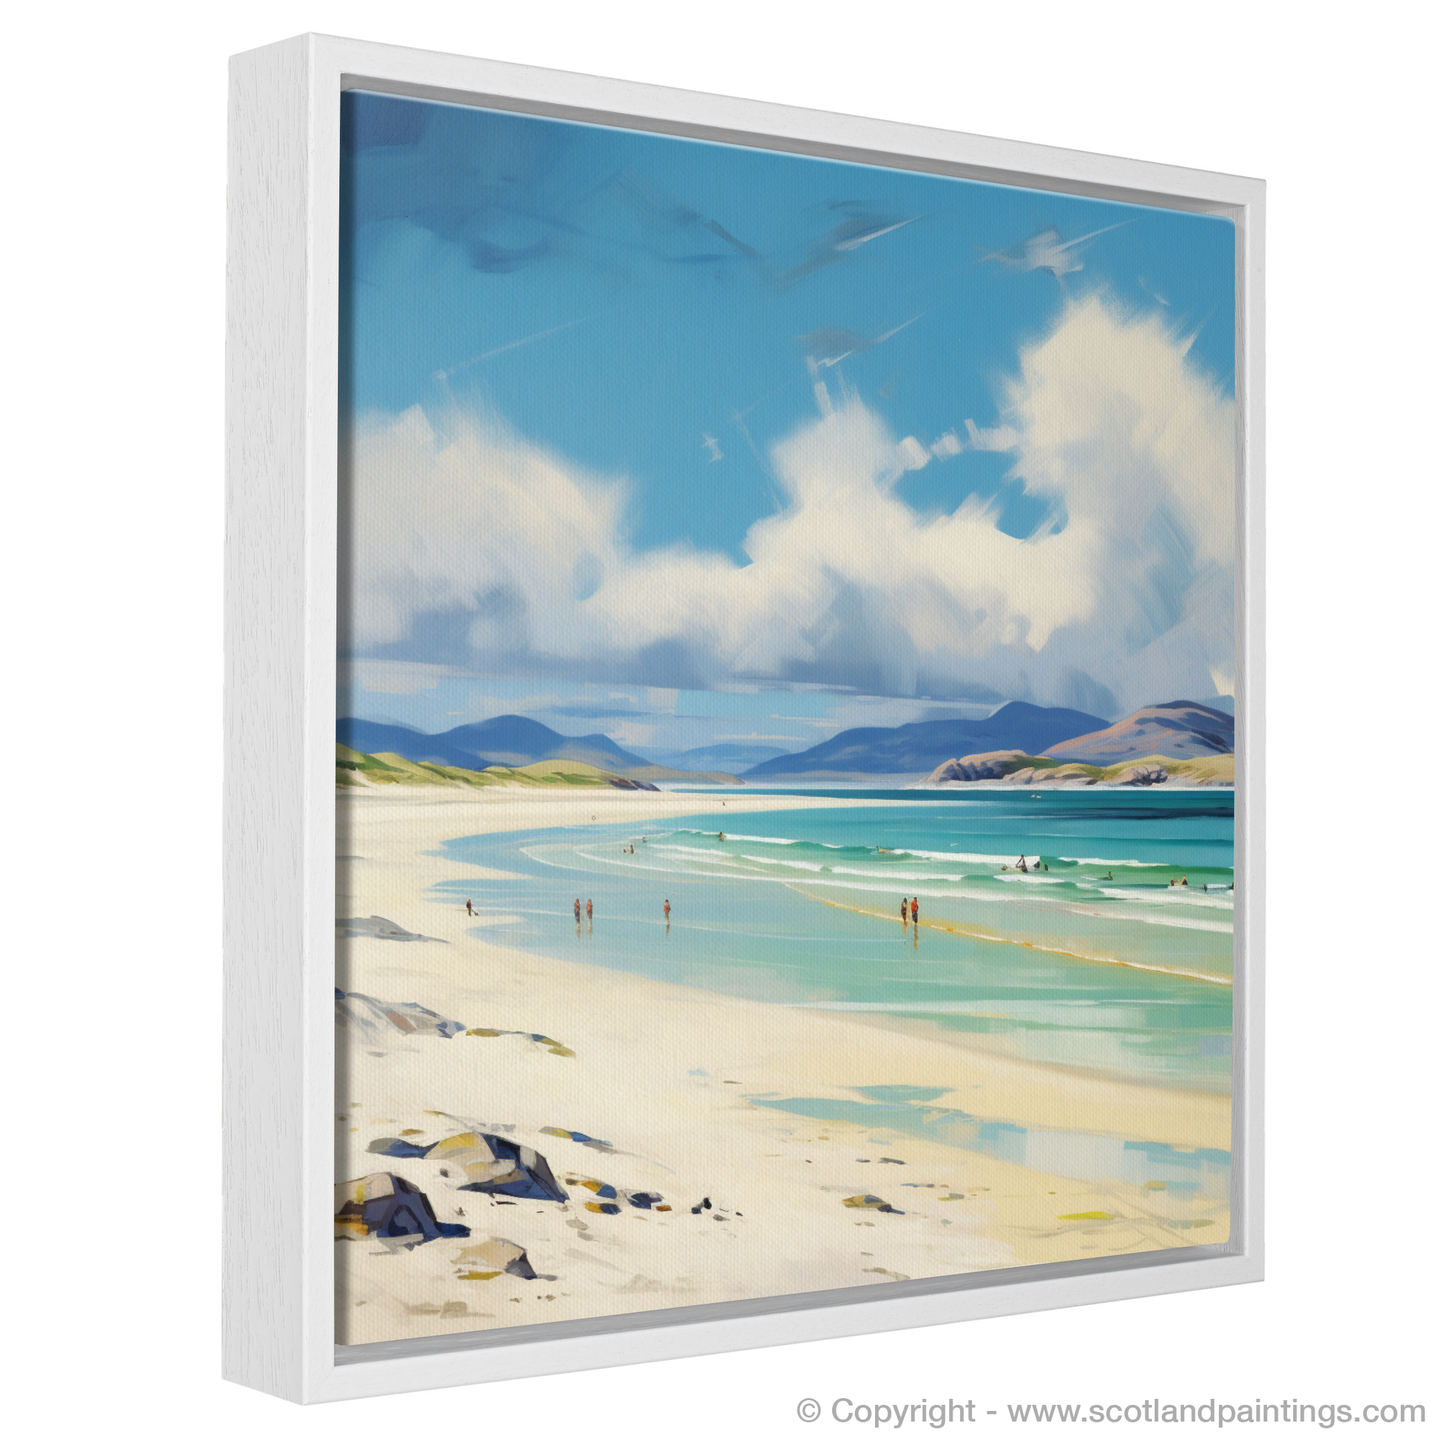 Painting and Art Print of Luskentyre Beach, Isle of Harris entitled "Serene Shores of Luskentyre Beach".